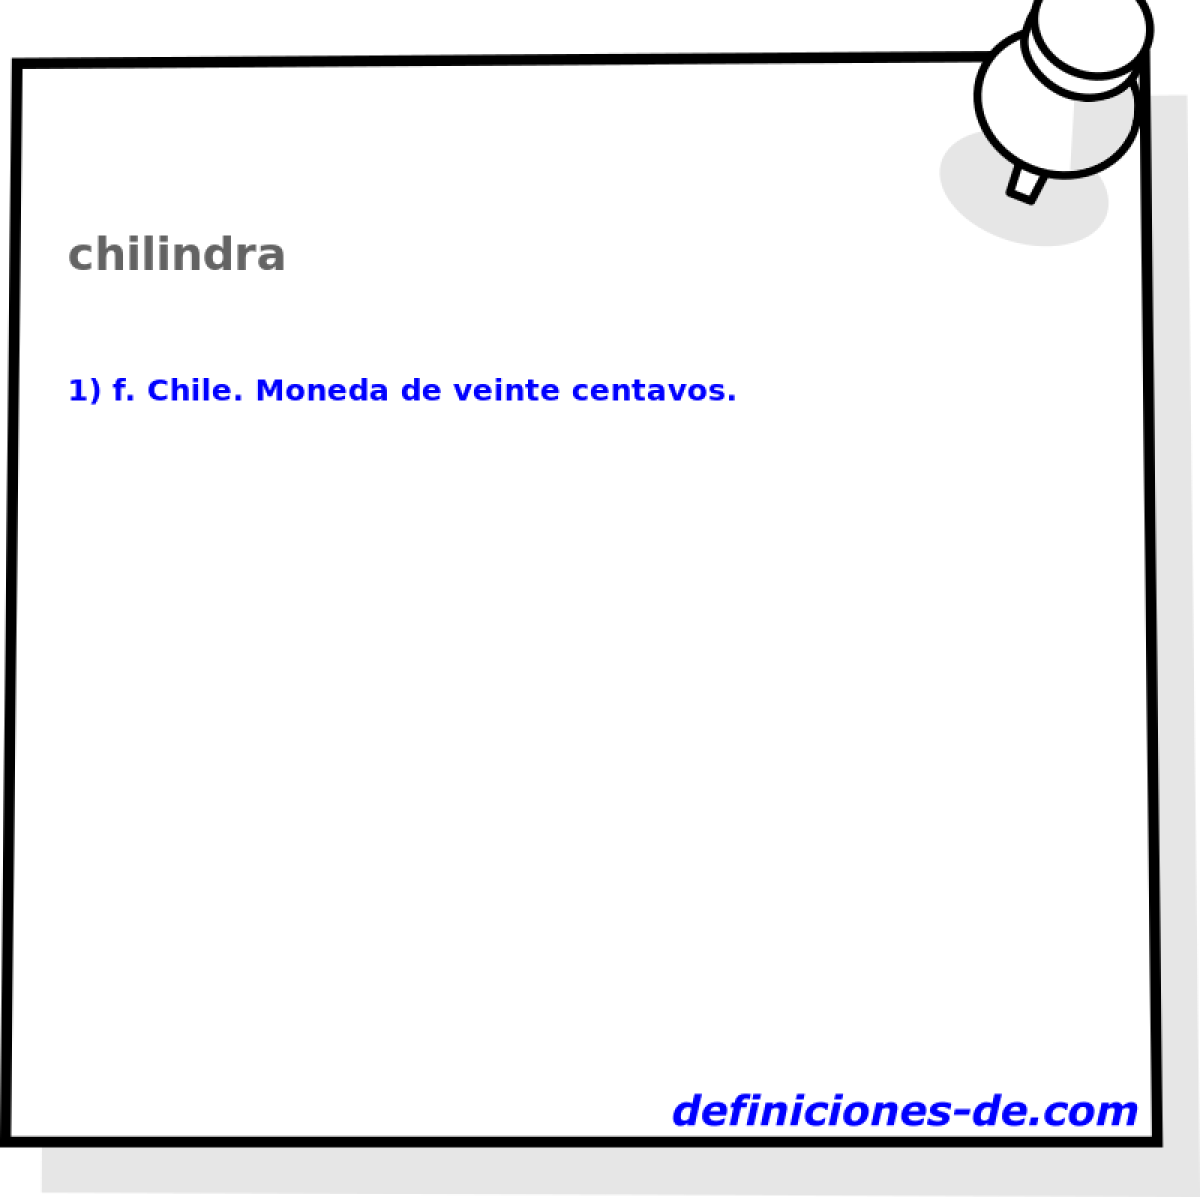 chilindra 